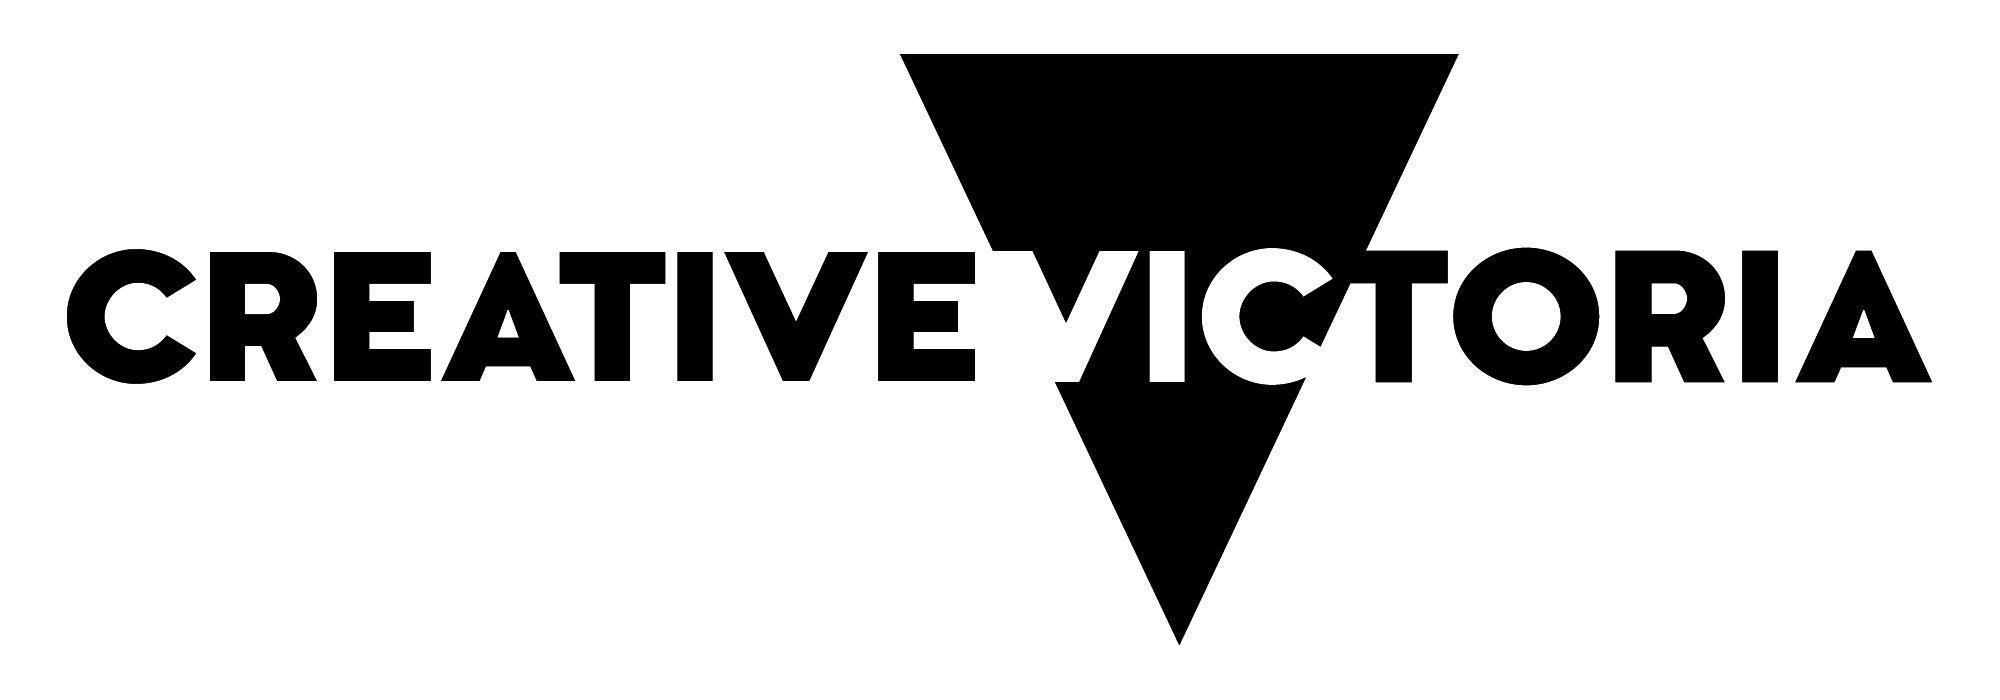 Victoria Logo - Creative Victoria Logo and Guidelines | Creative Victoria